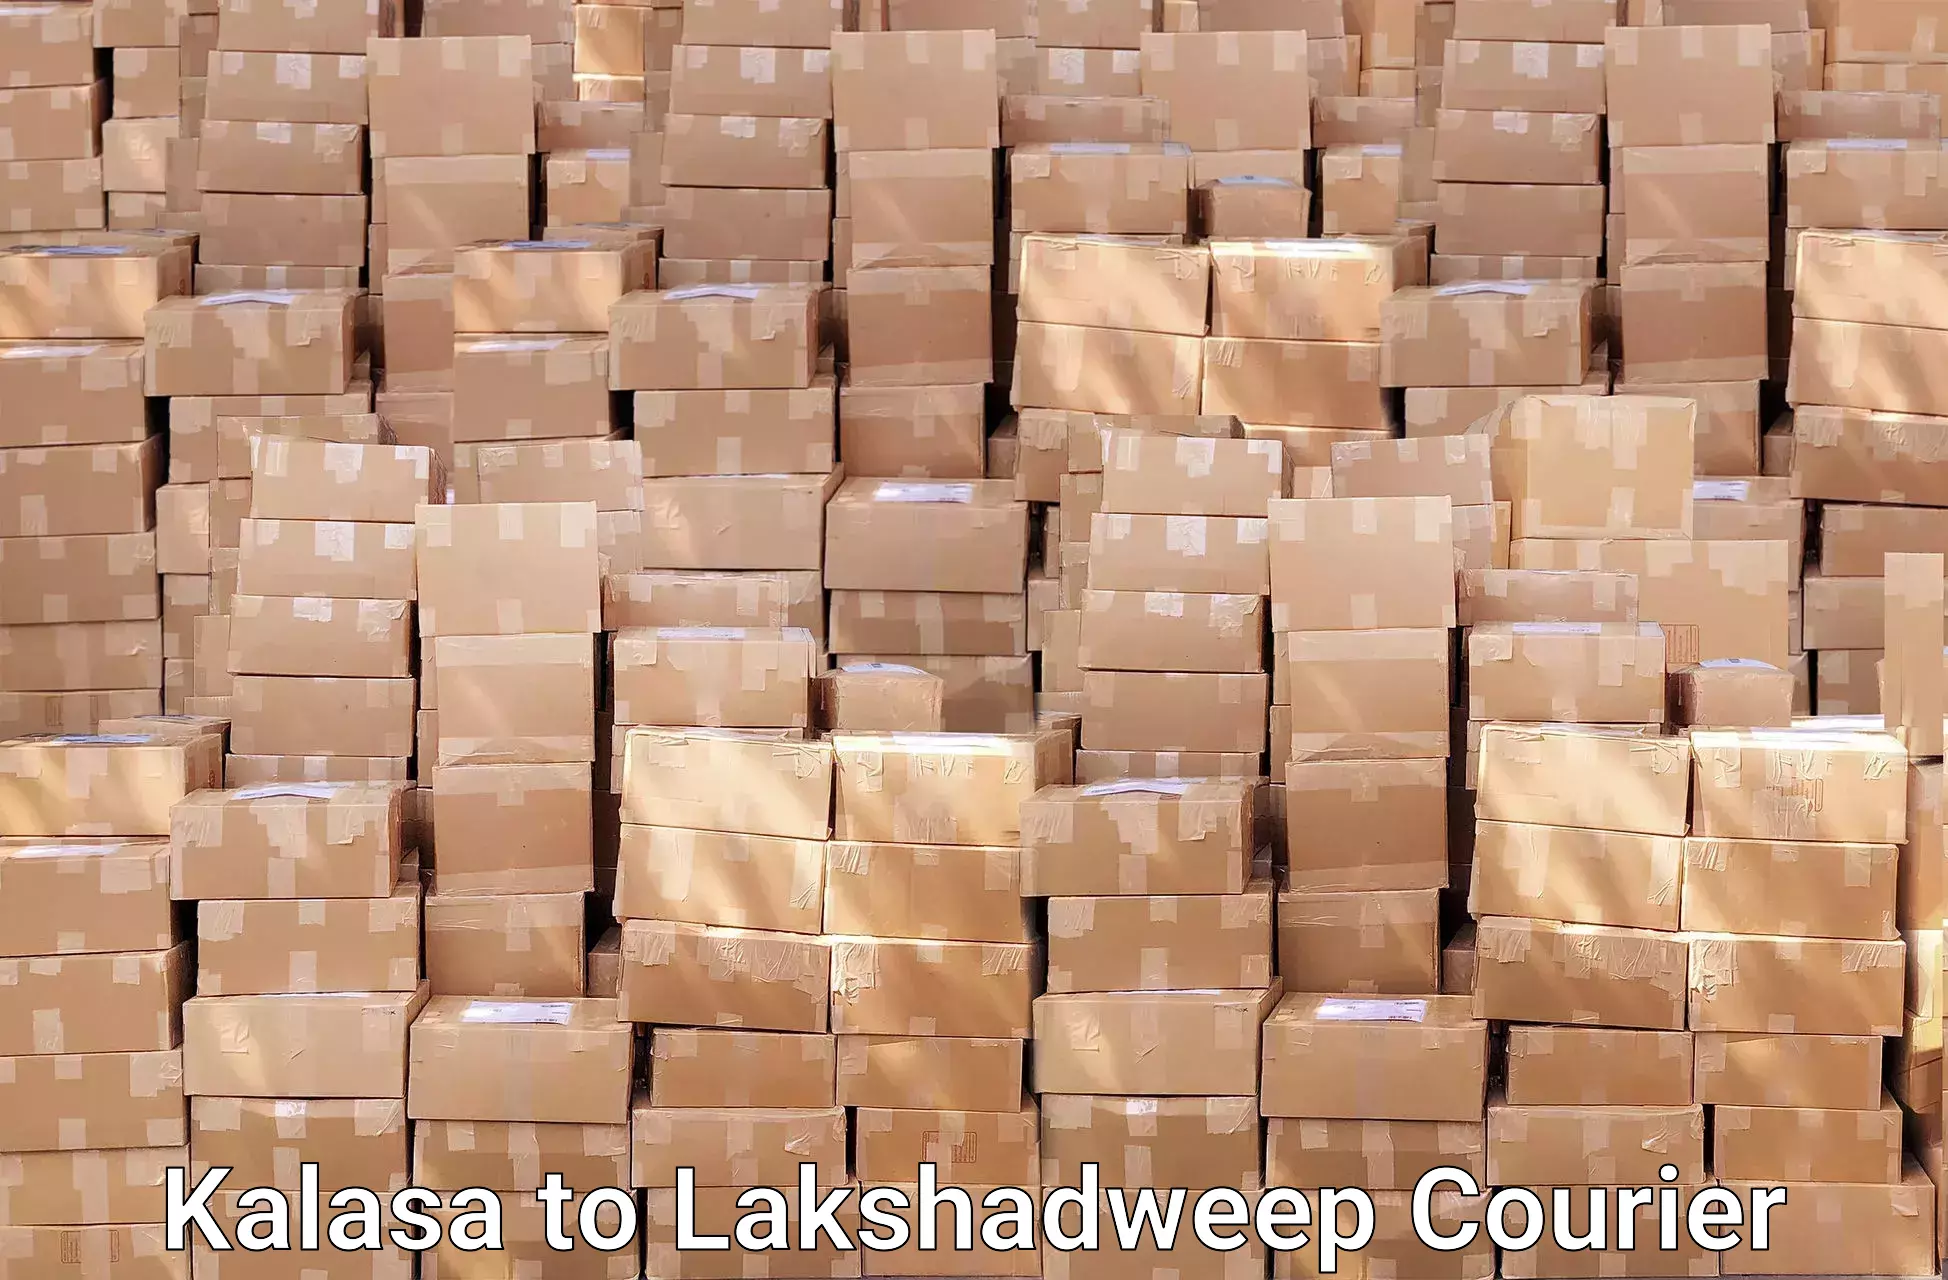 Furniture transport and logistics Kalasa to Lakshadweep